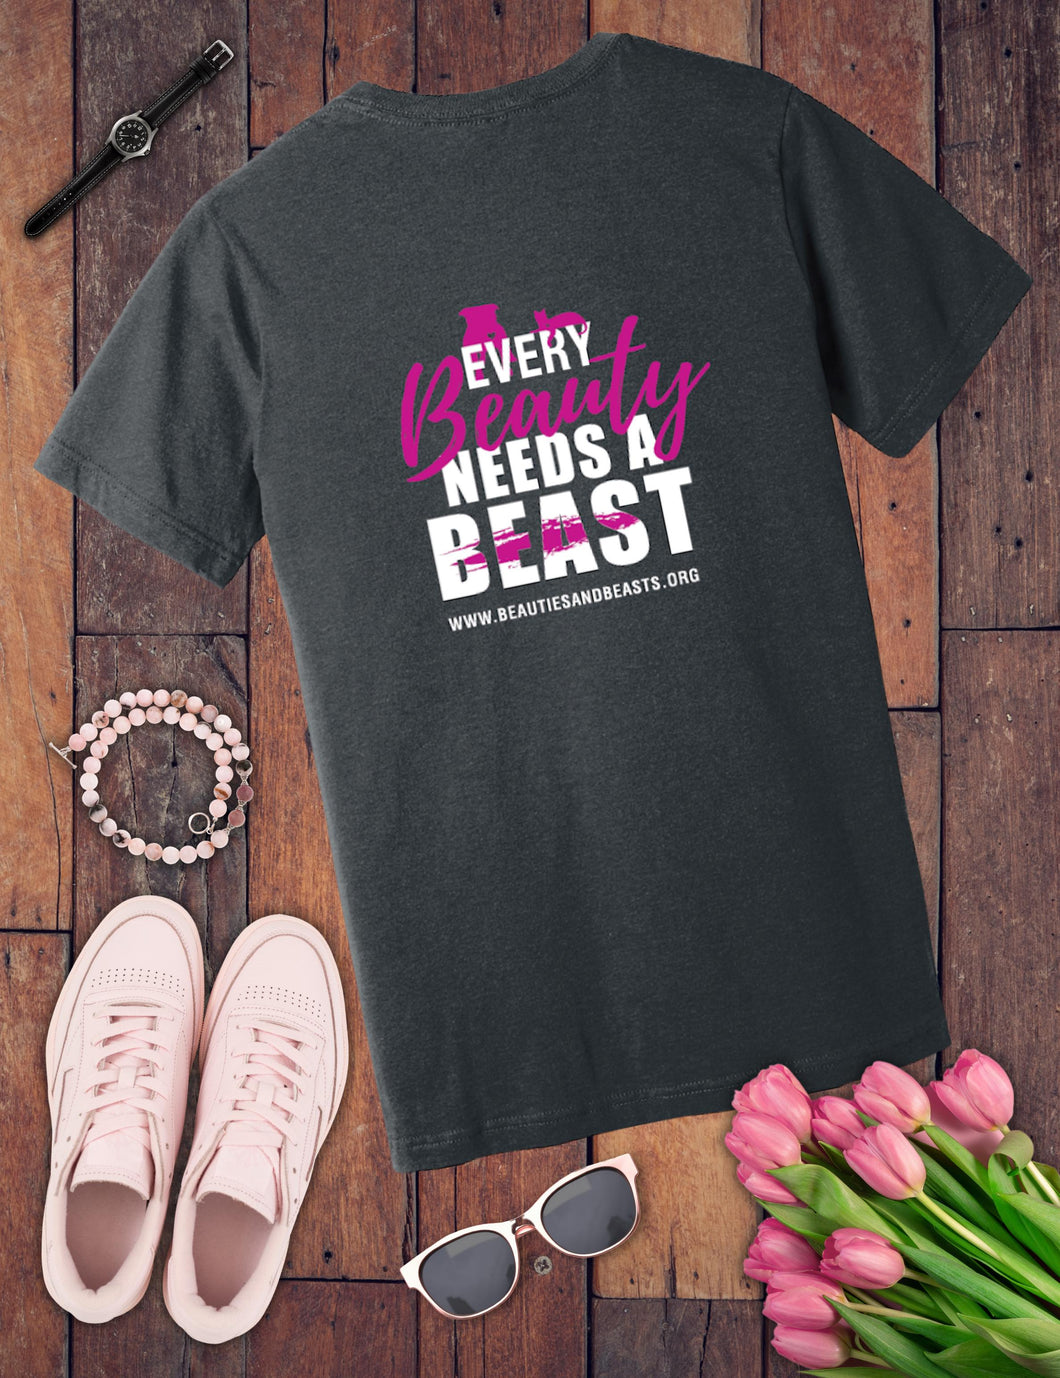 Every Beauty Needs a Beast T-Shirt